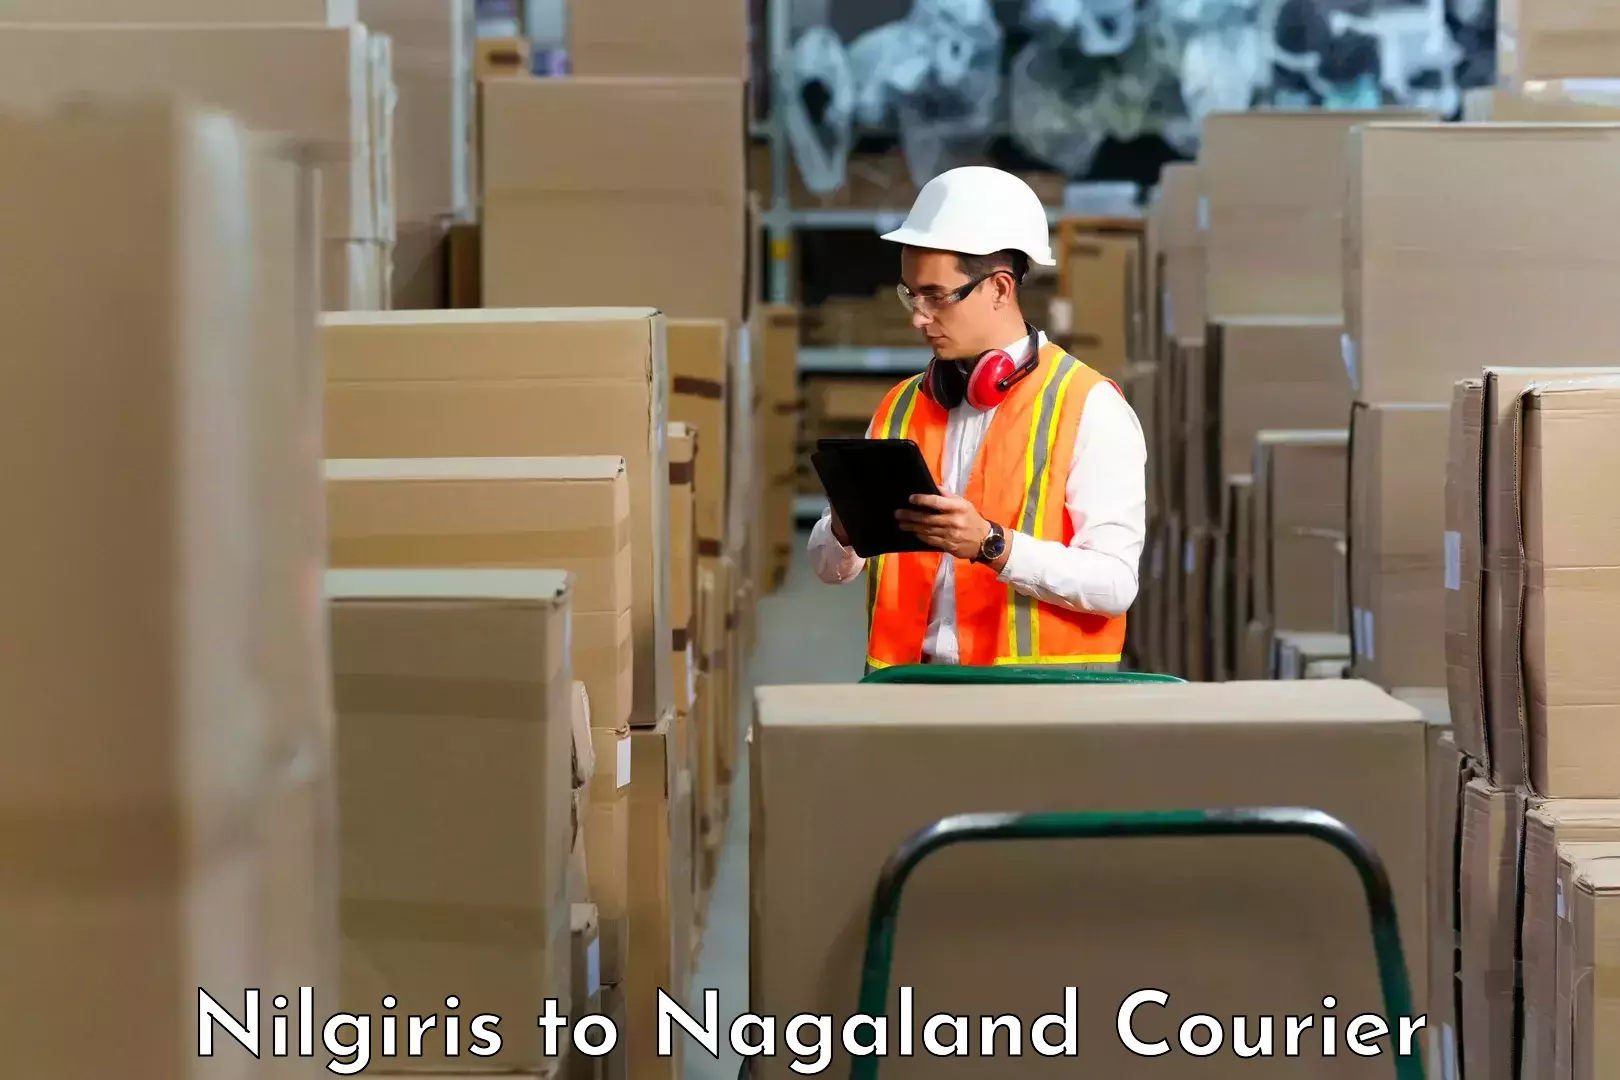 Cargo courier service Nilgiris to Nagaland